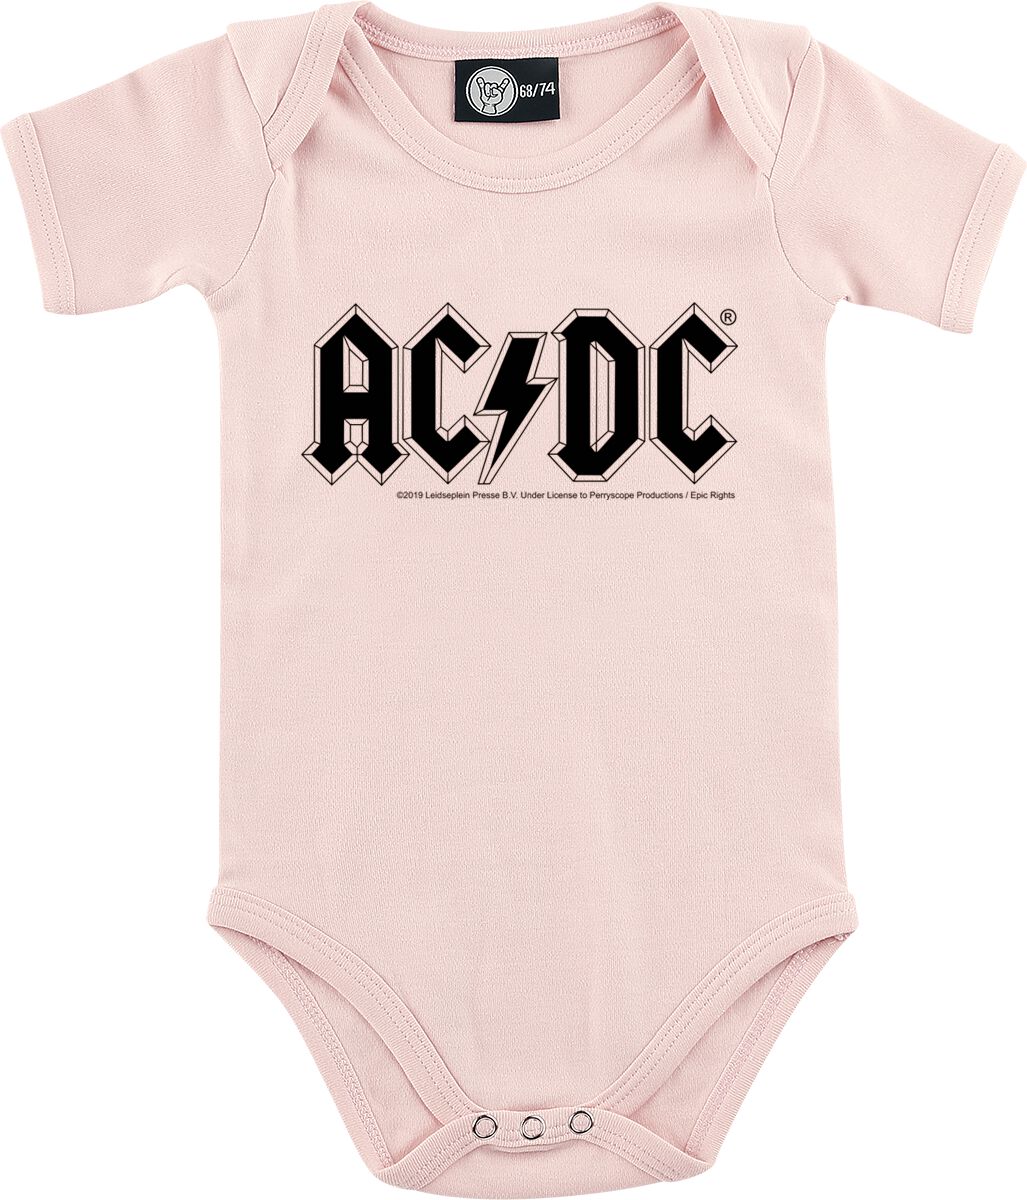 AC/DC Body für Neugeborene - Metal-Kids - Logo - für Mädchen & Jungen - rosa  - Lizenziertes Merchandise!